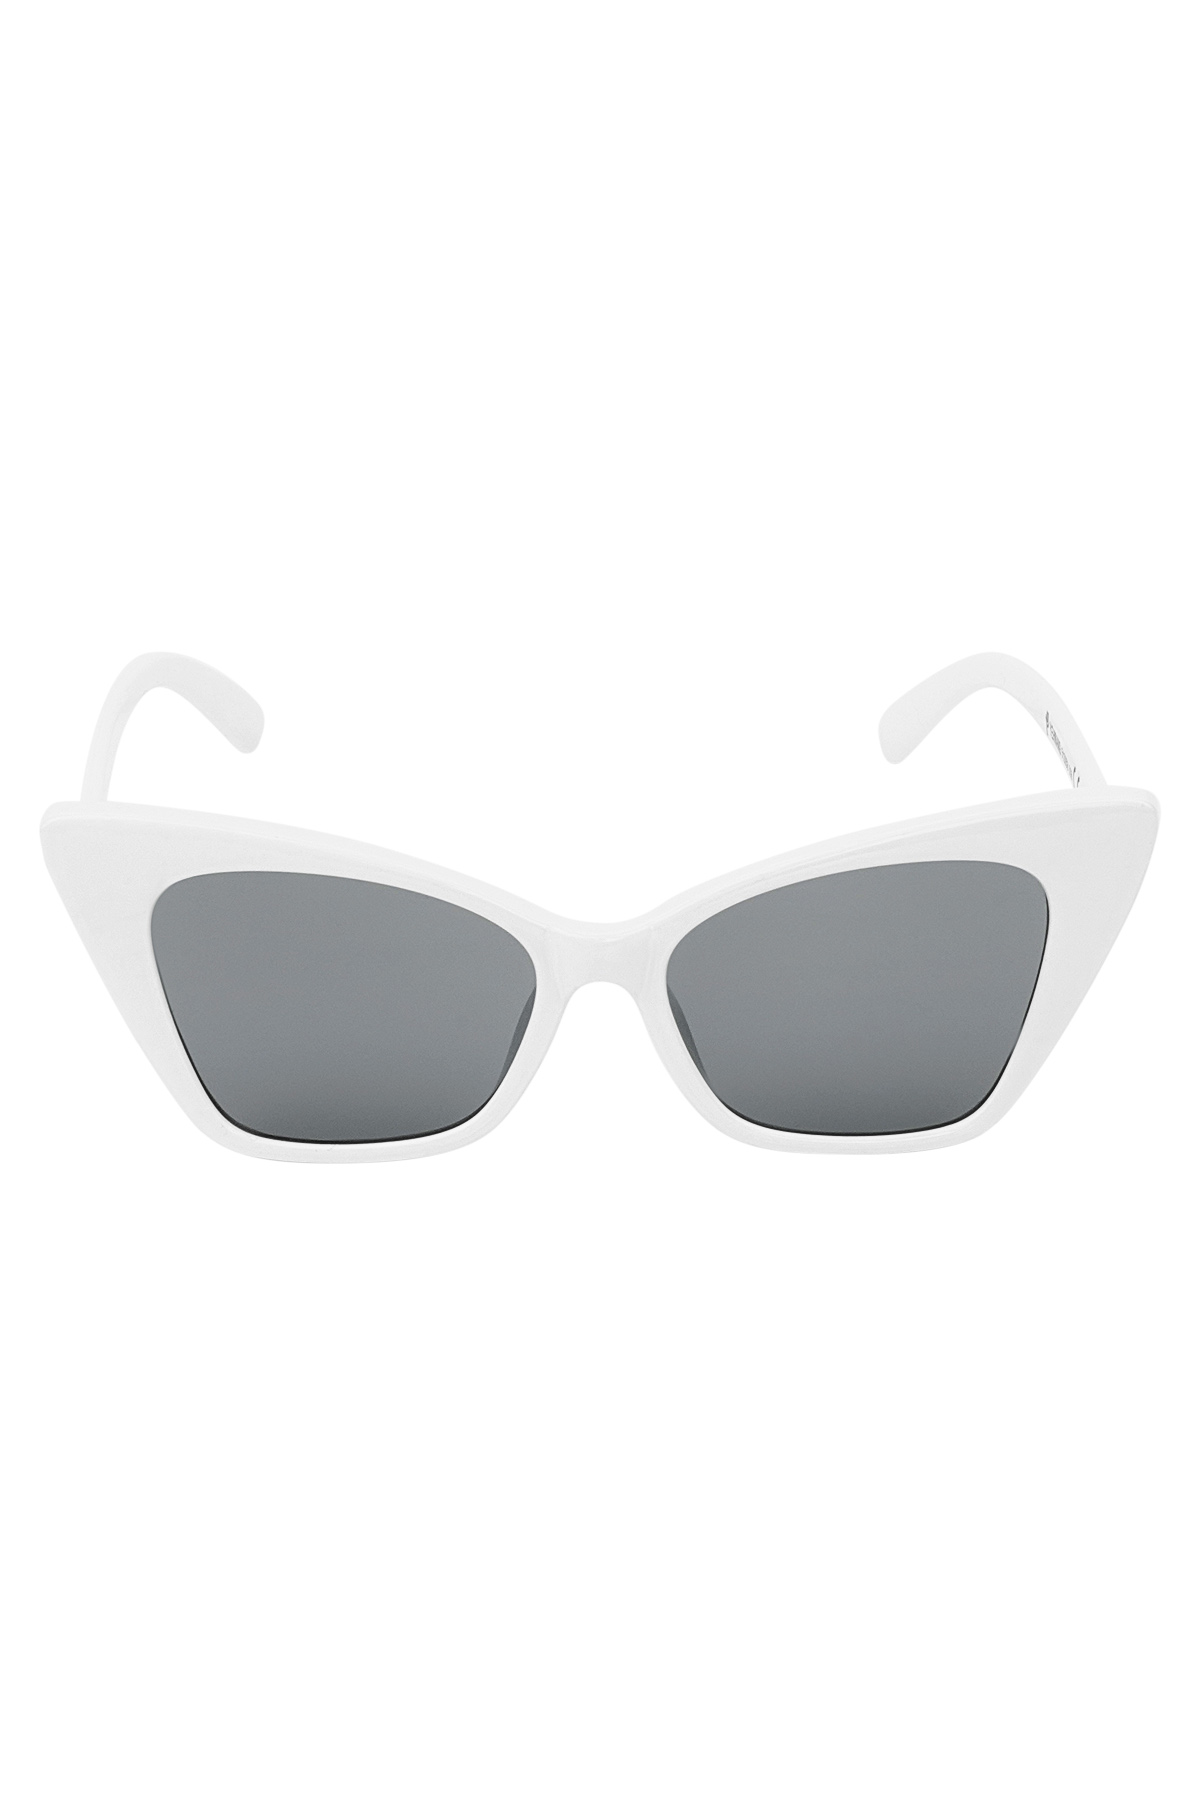 Sunglasses single color frame - white Picture7